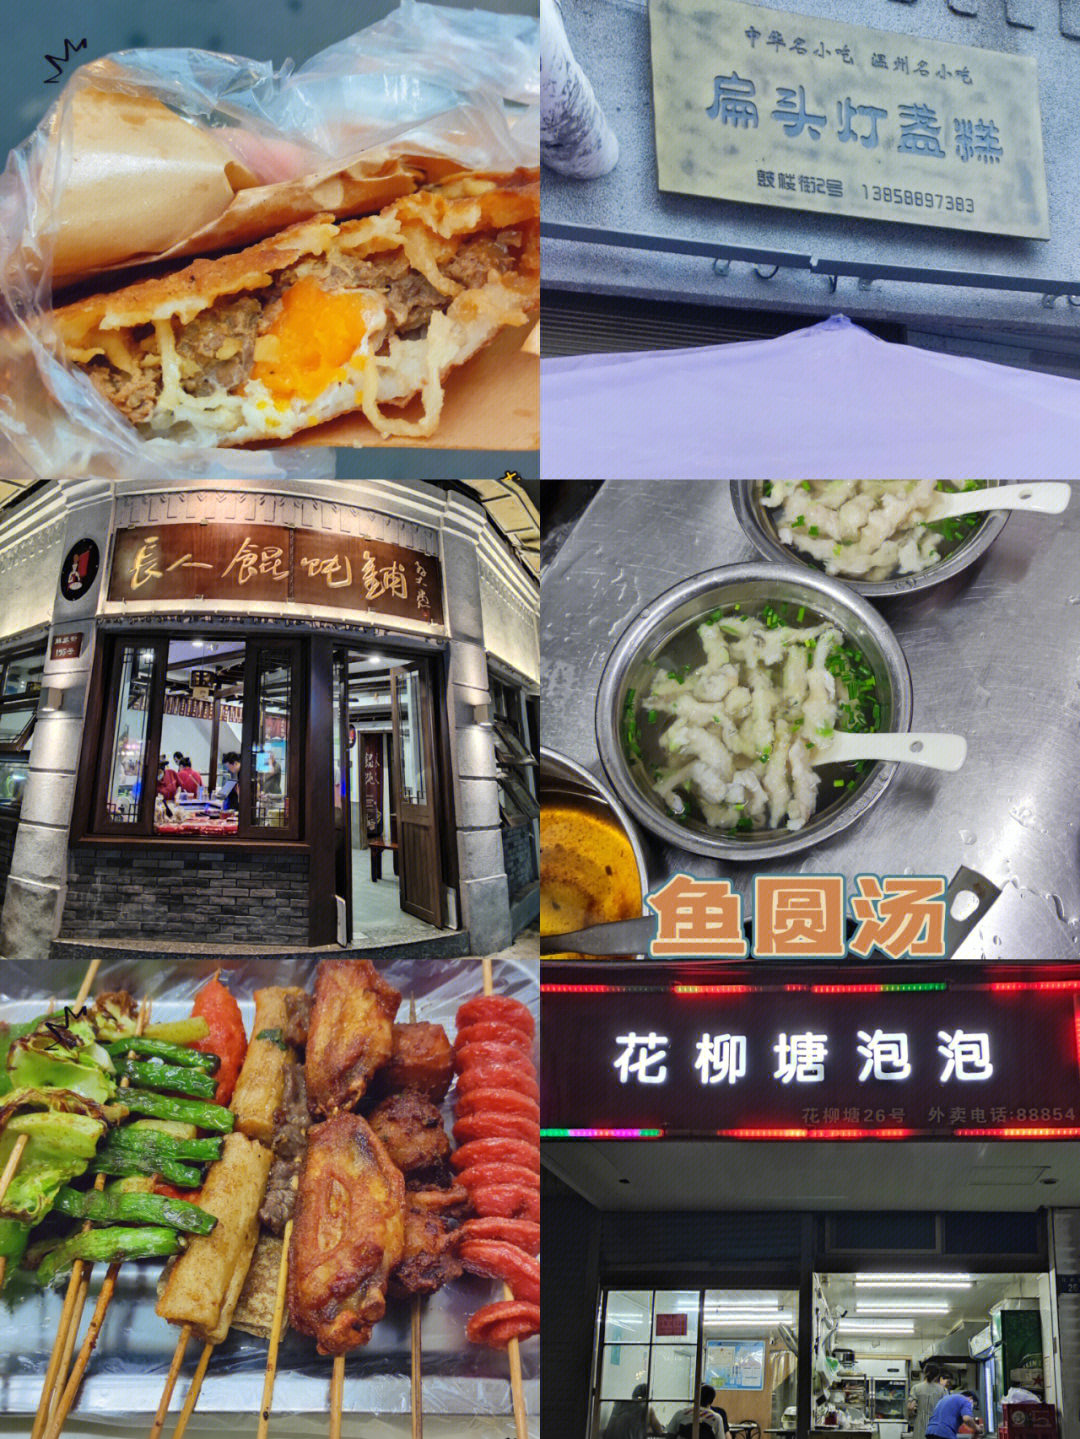 温州五马街旅游及小吃打卡